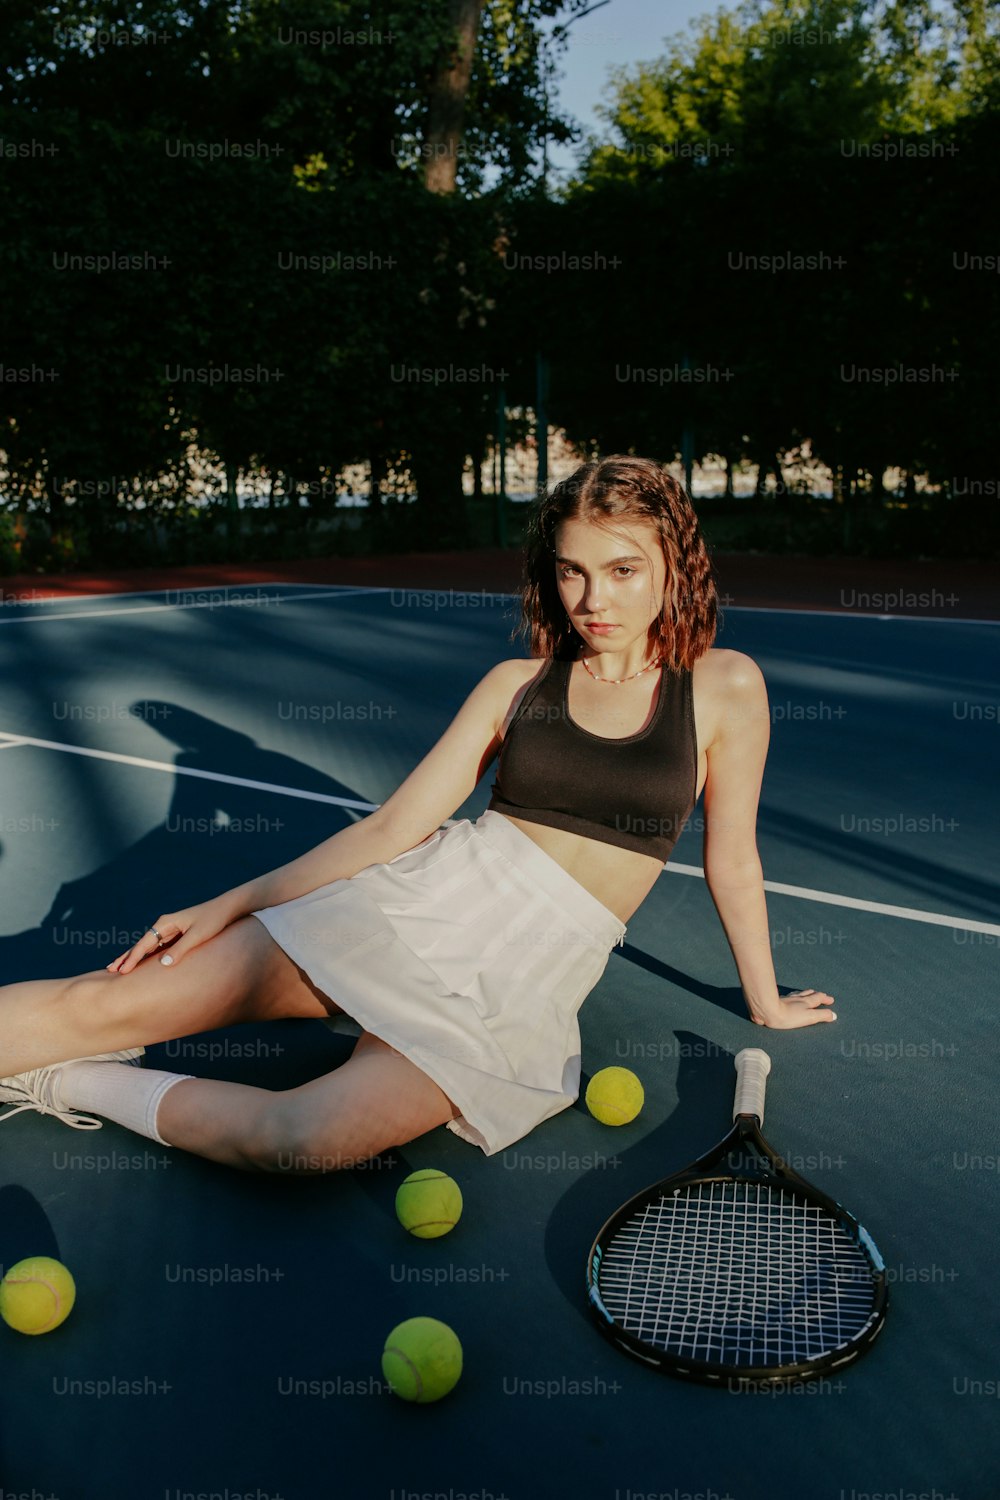 テニスコートに座ってテニスラケットを持つ女性